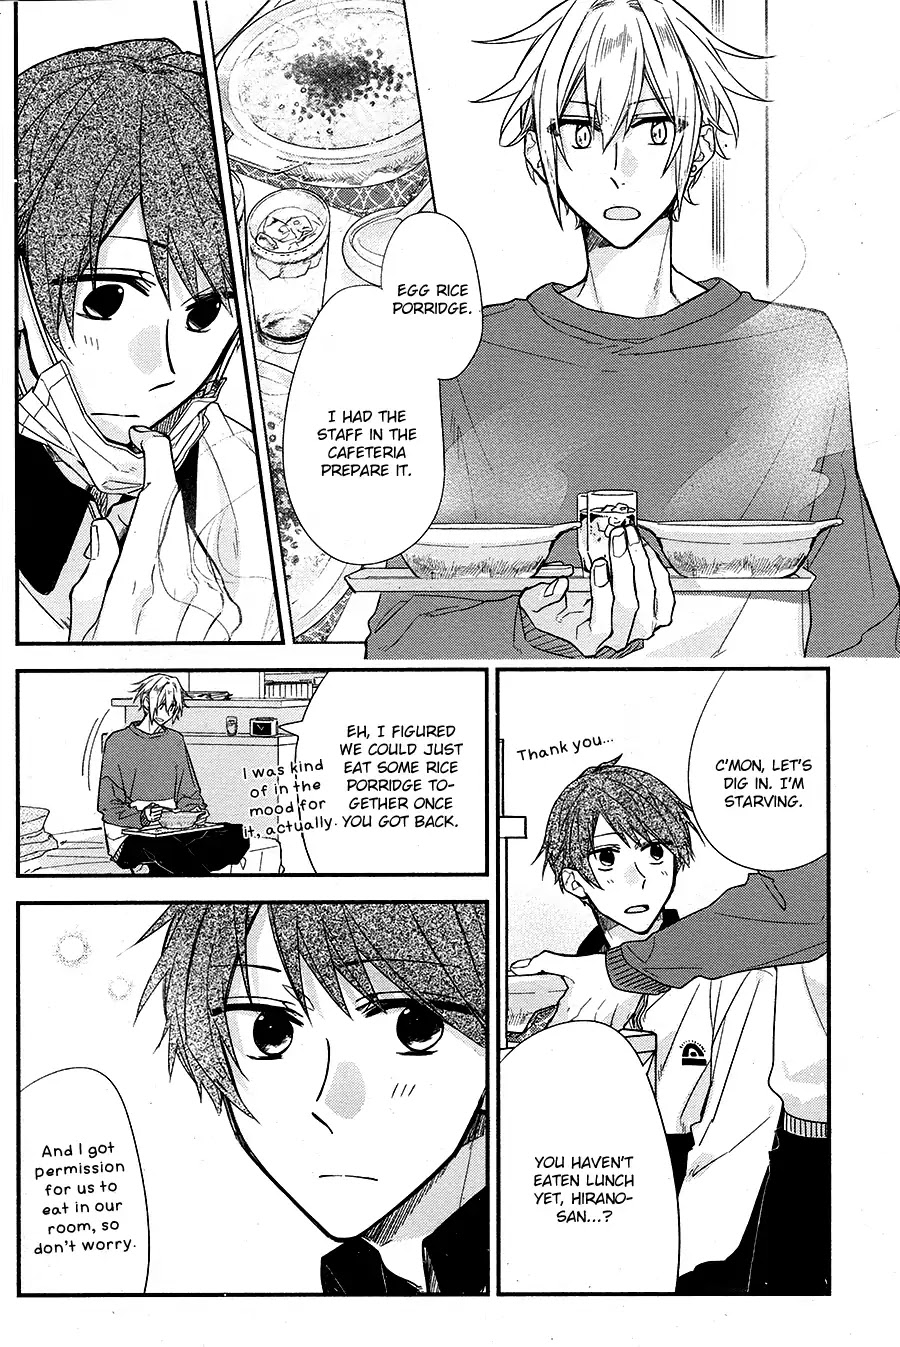 Hirano To Kagiura - 1 page 14